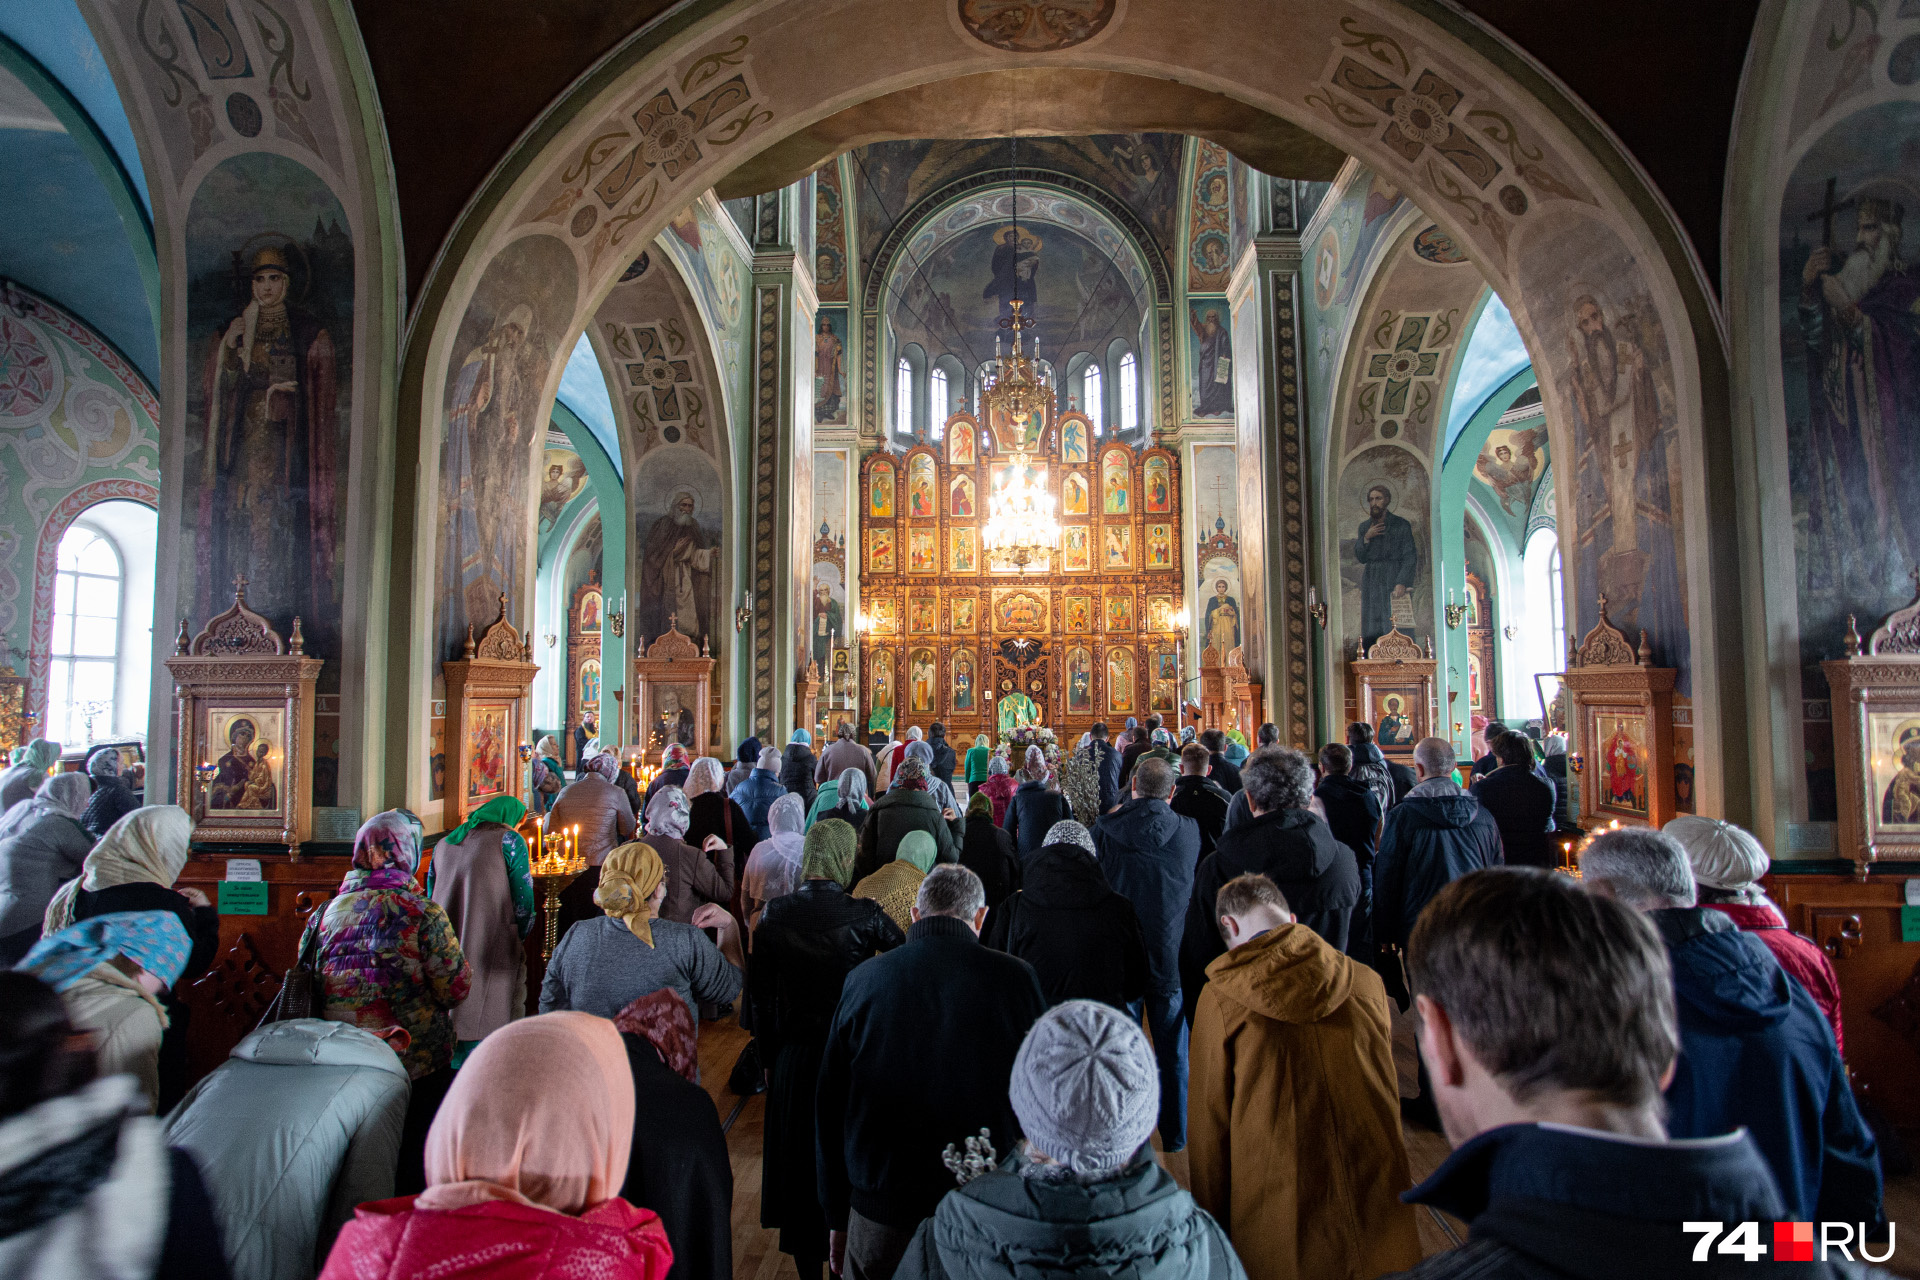 А это Свято-Троицкая церковь на улице Кирова. Храм полон. Отсюда тоже сегодня выгнали журналистов